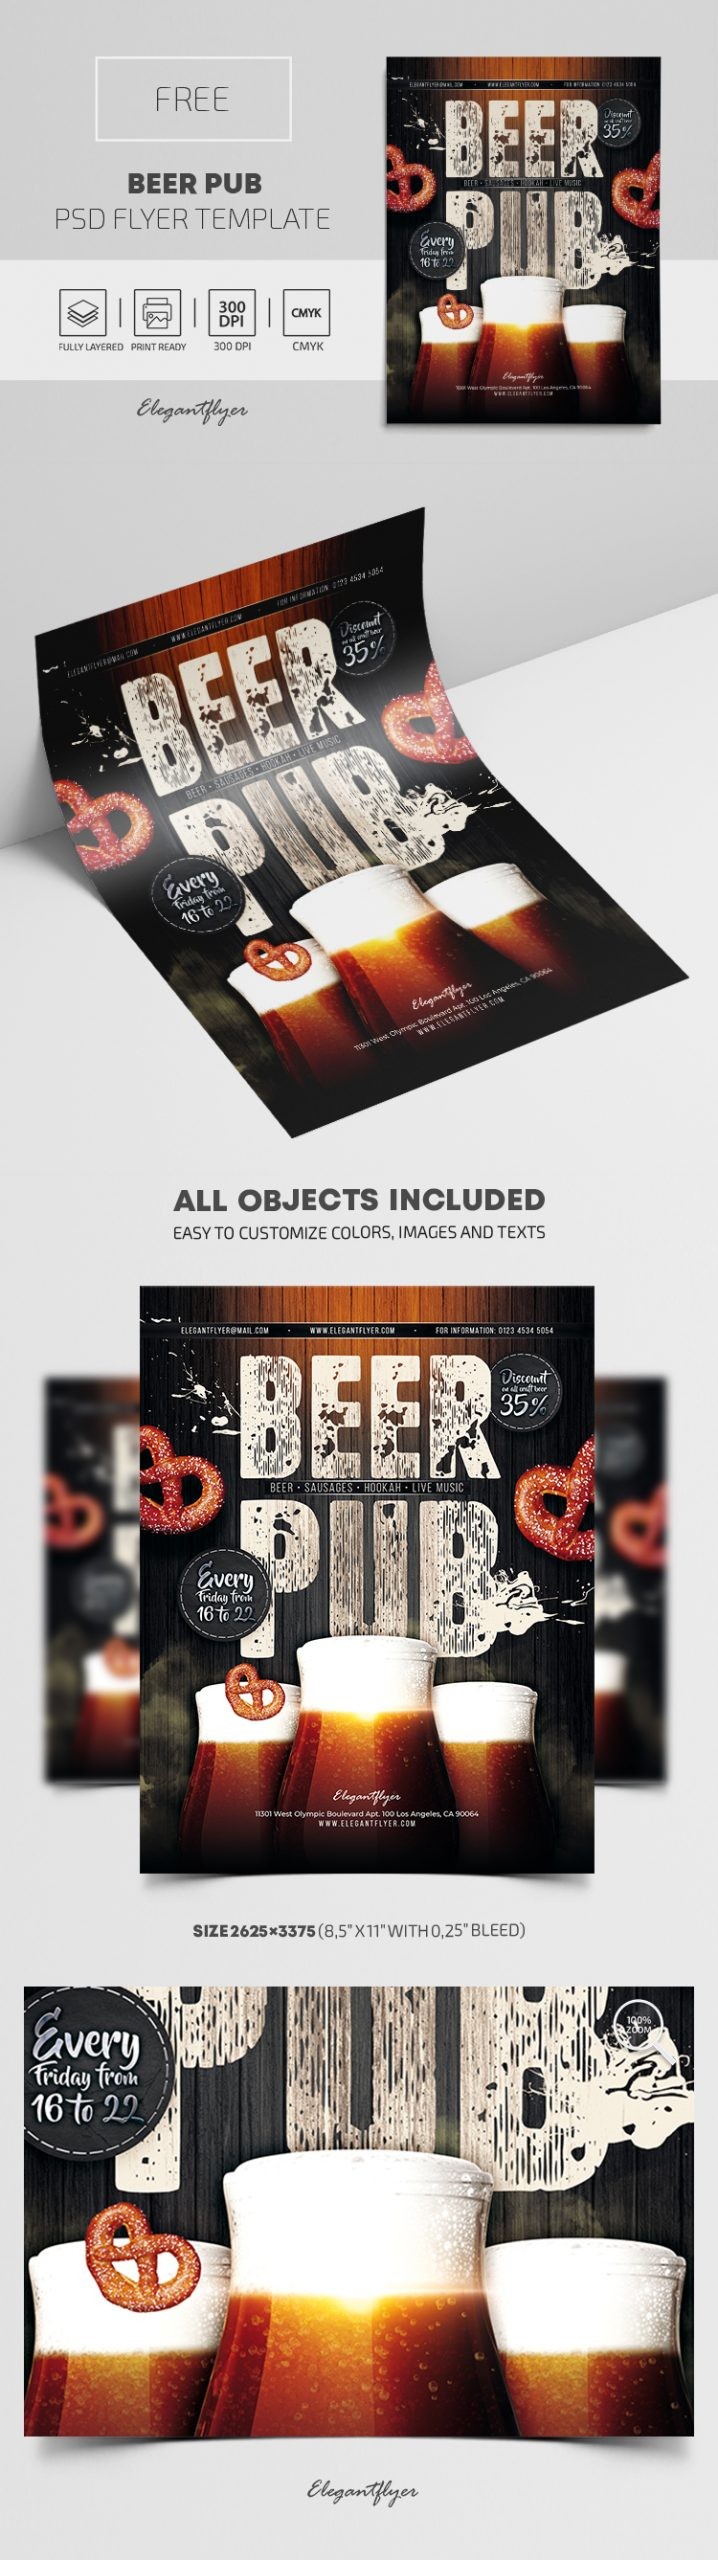 Beer Pub Flyer Design by ElegantFlyer